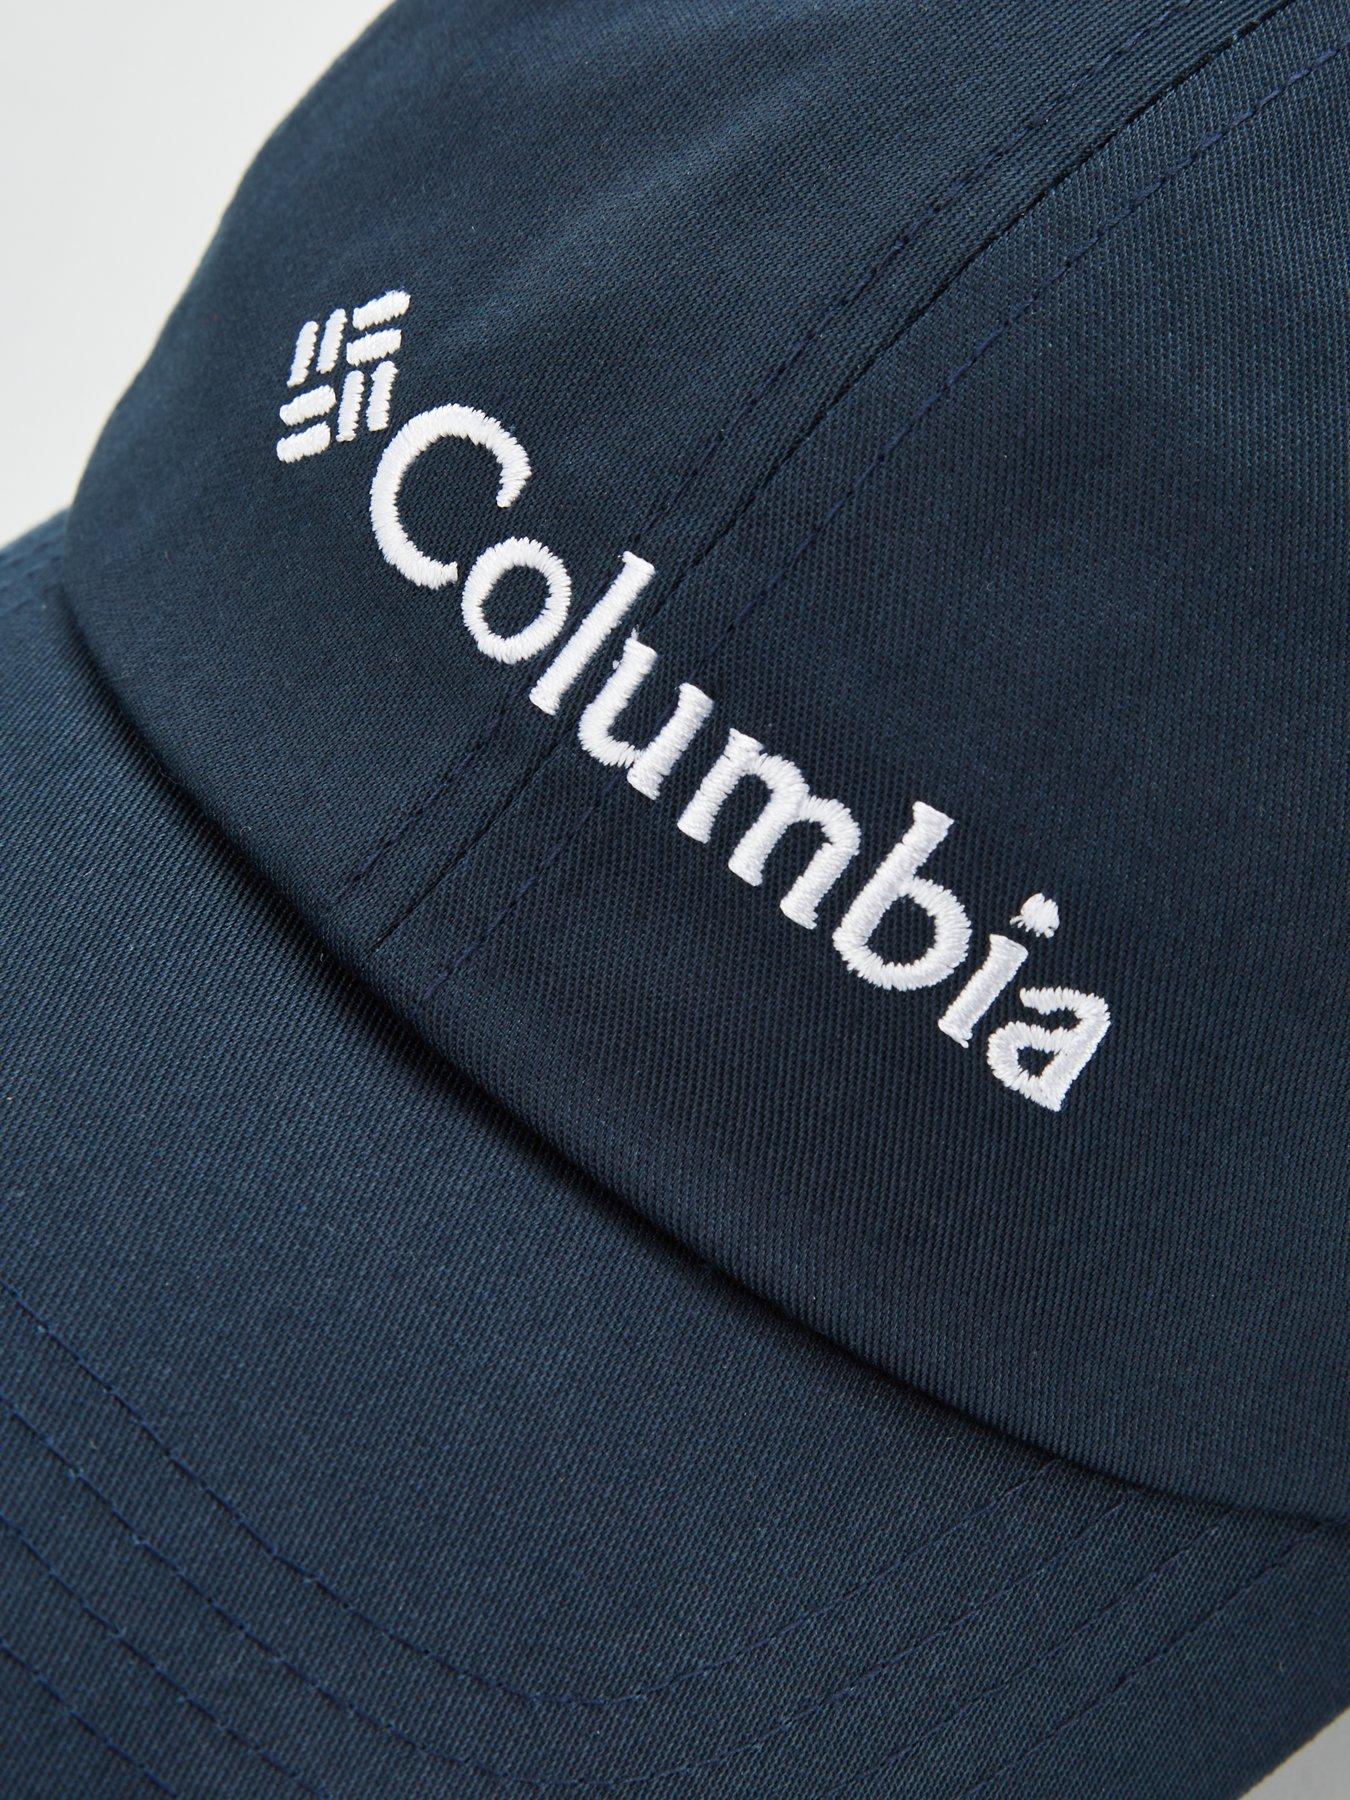 Cap Columbia Roc II Black White Unisex